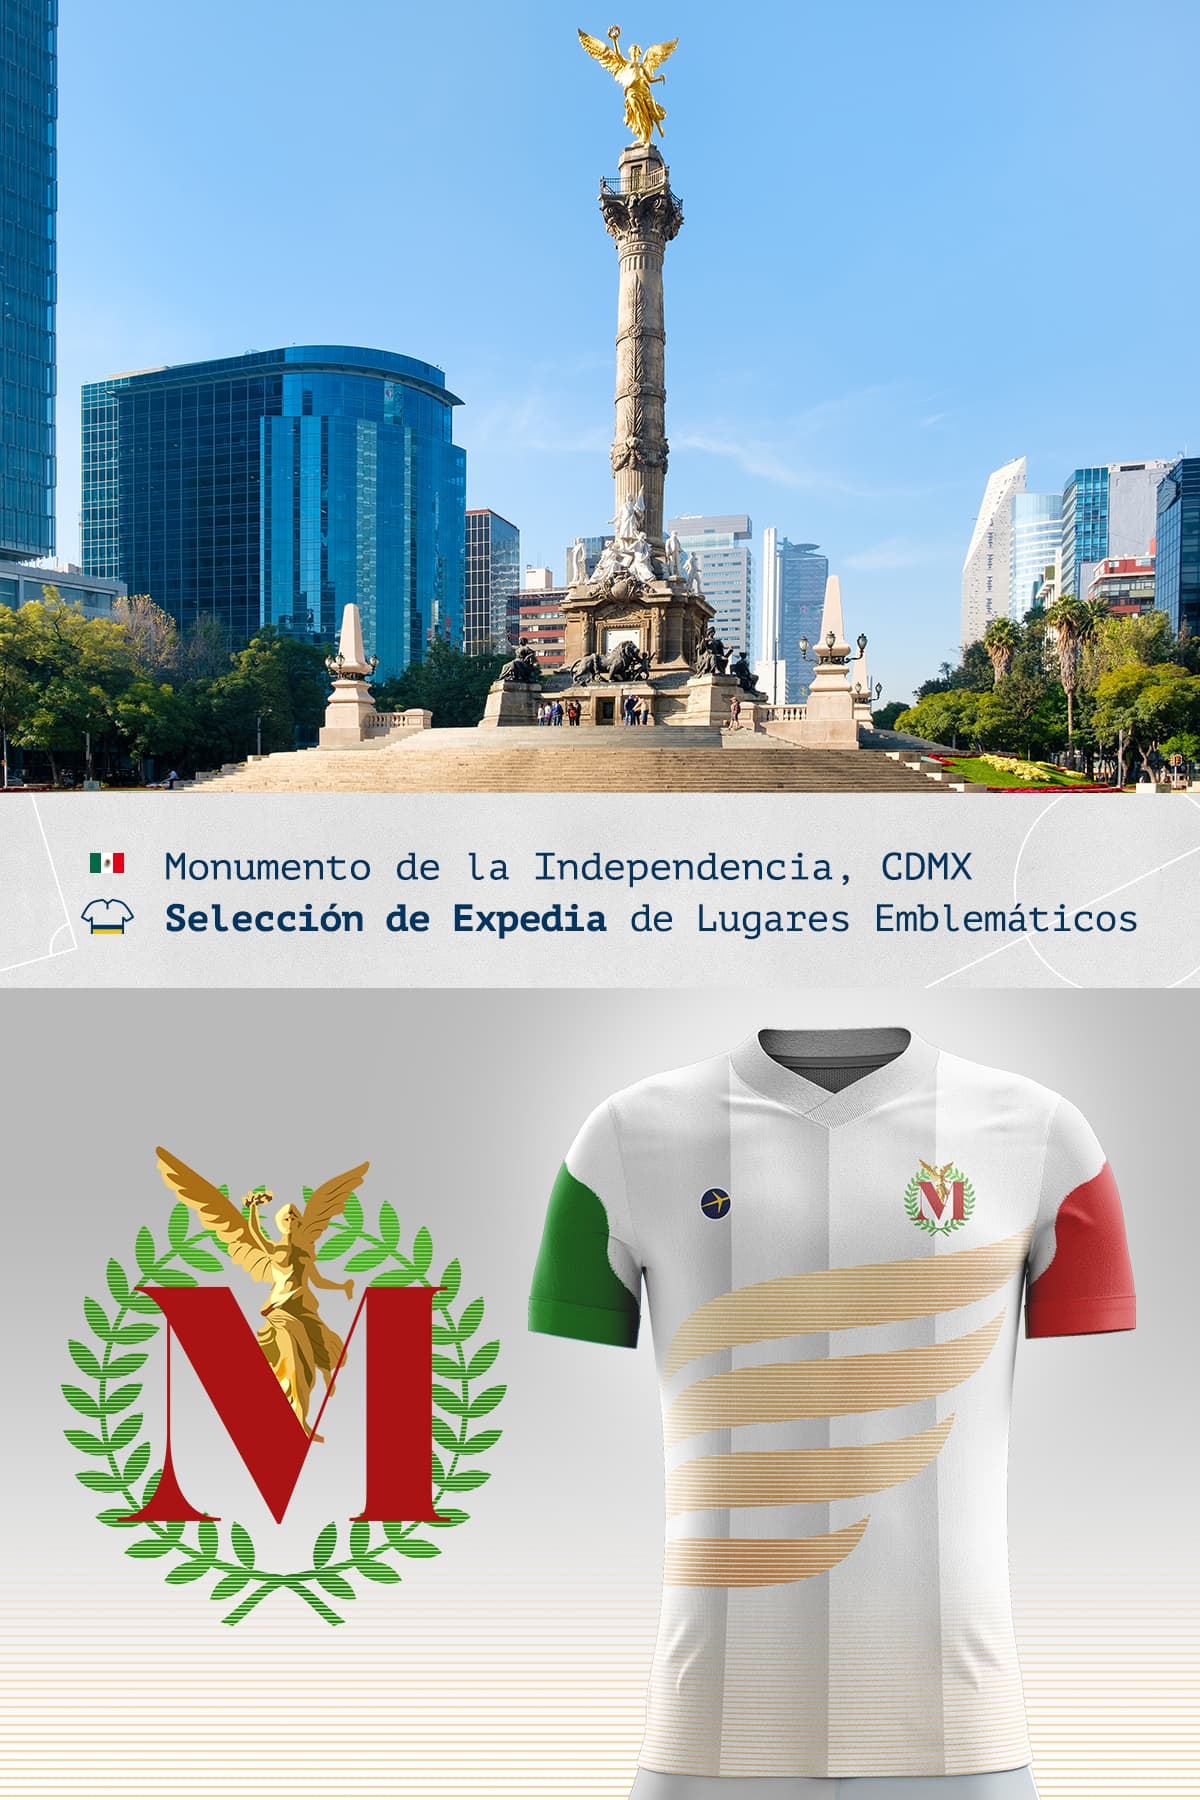 Jersey del Monumento de la Independencia de la Independecia en la Ciudad de México 